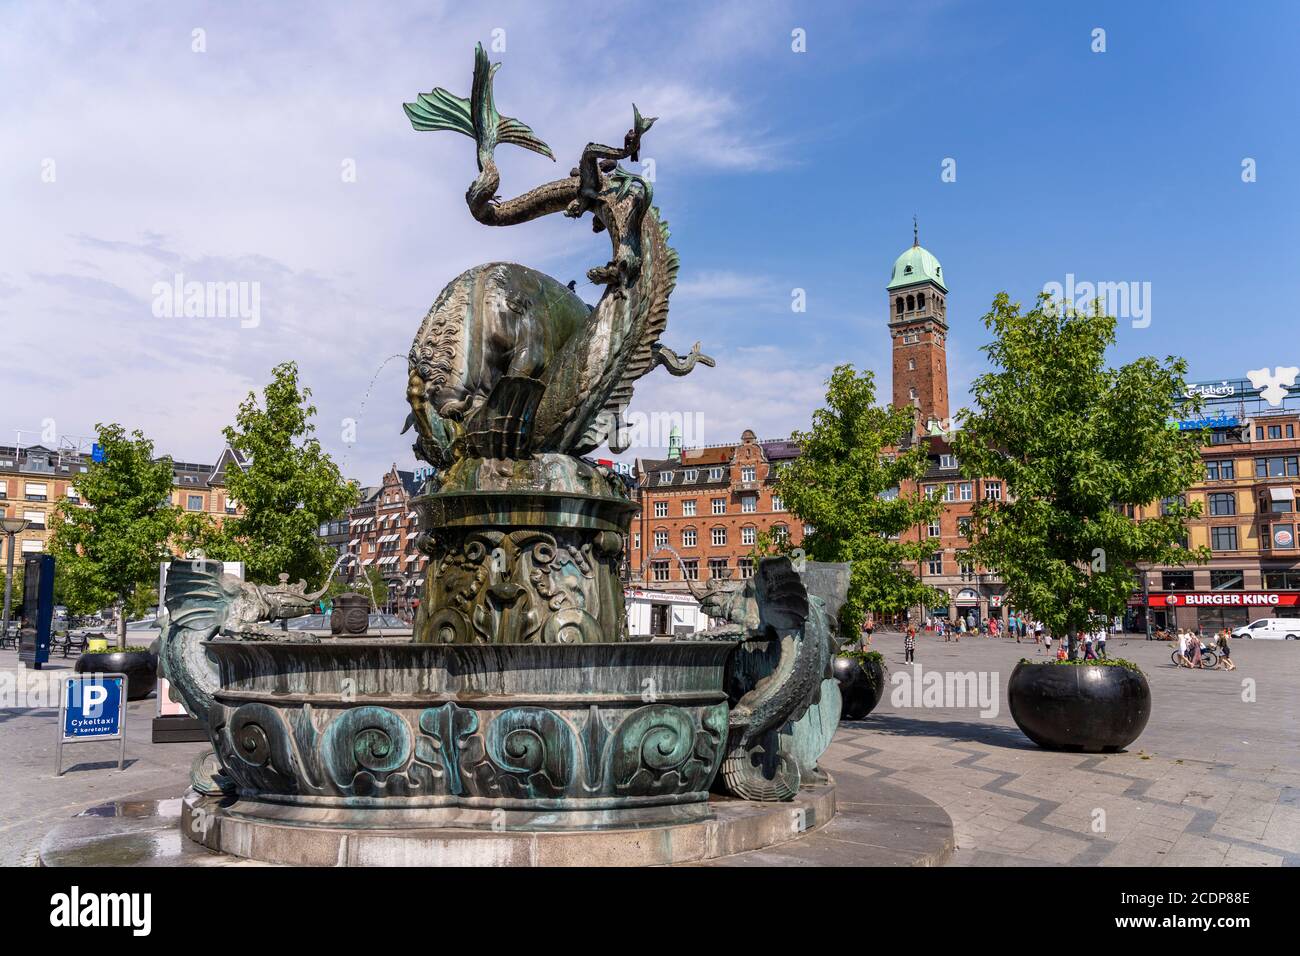 Der Drachenspringbrunnen Dragespringvand auf dem Rathausplatz, Kopenhagen, Dänemark, Europa | la Fuente del Dragón Dragespringvandet en la plaza del Ayuntamiento Foto de stock